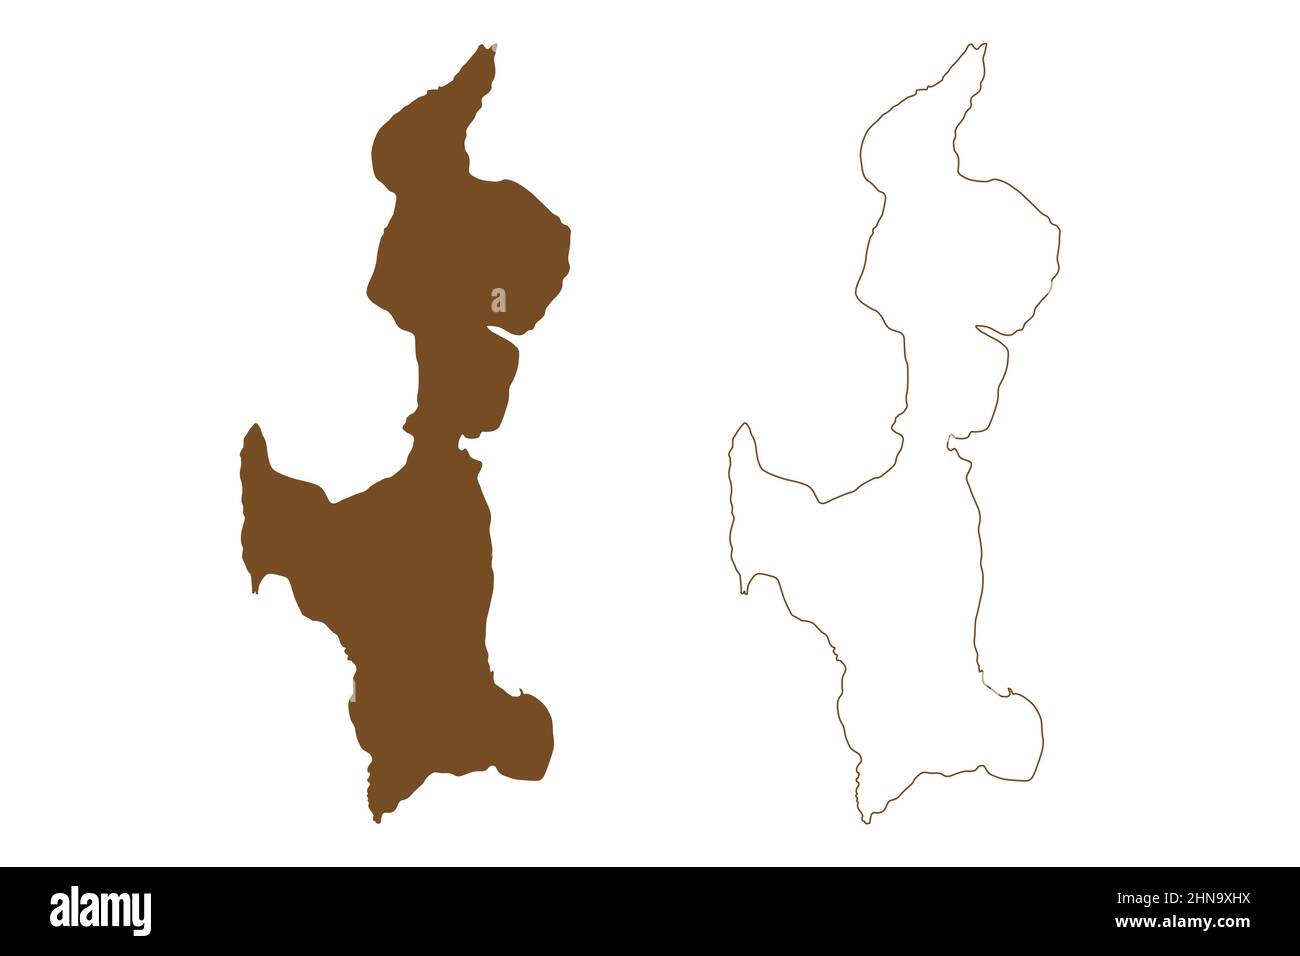 Île d'eDay (Royaume-Uni de Grande-Bretagne et d'Irlande du Nord, Écosse, archipel d'Orkney) carte illustration vectorielle, croquis griffés de l'île d'aide Illustration de Vecteur